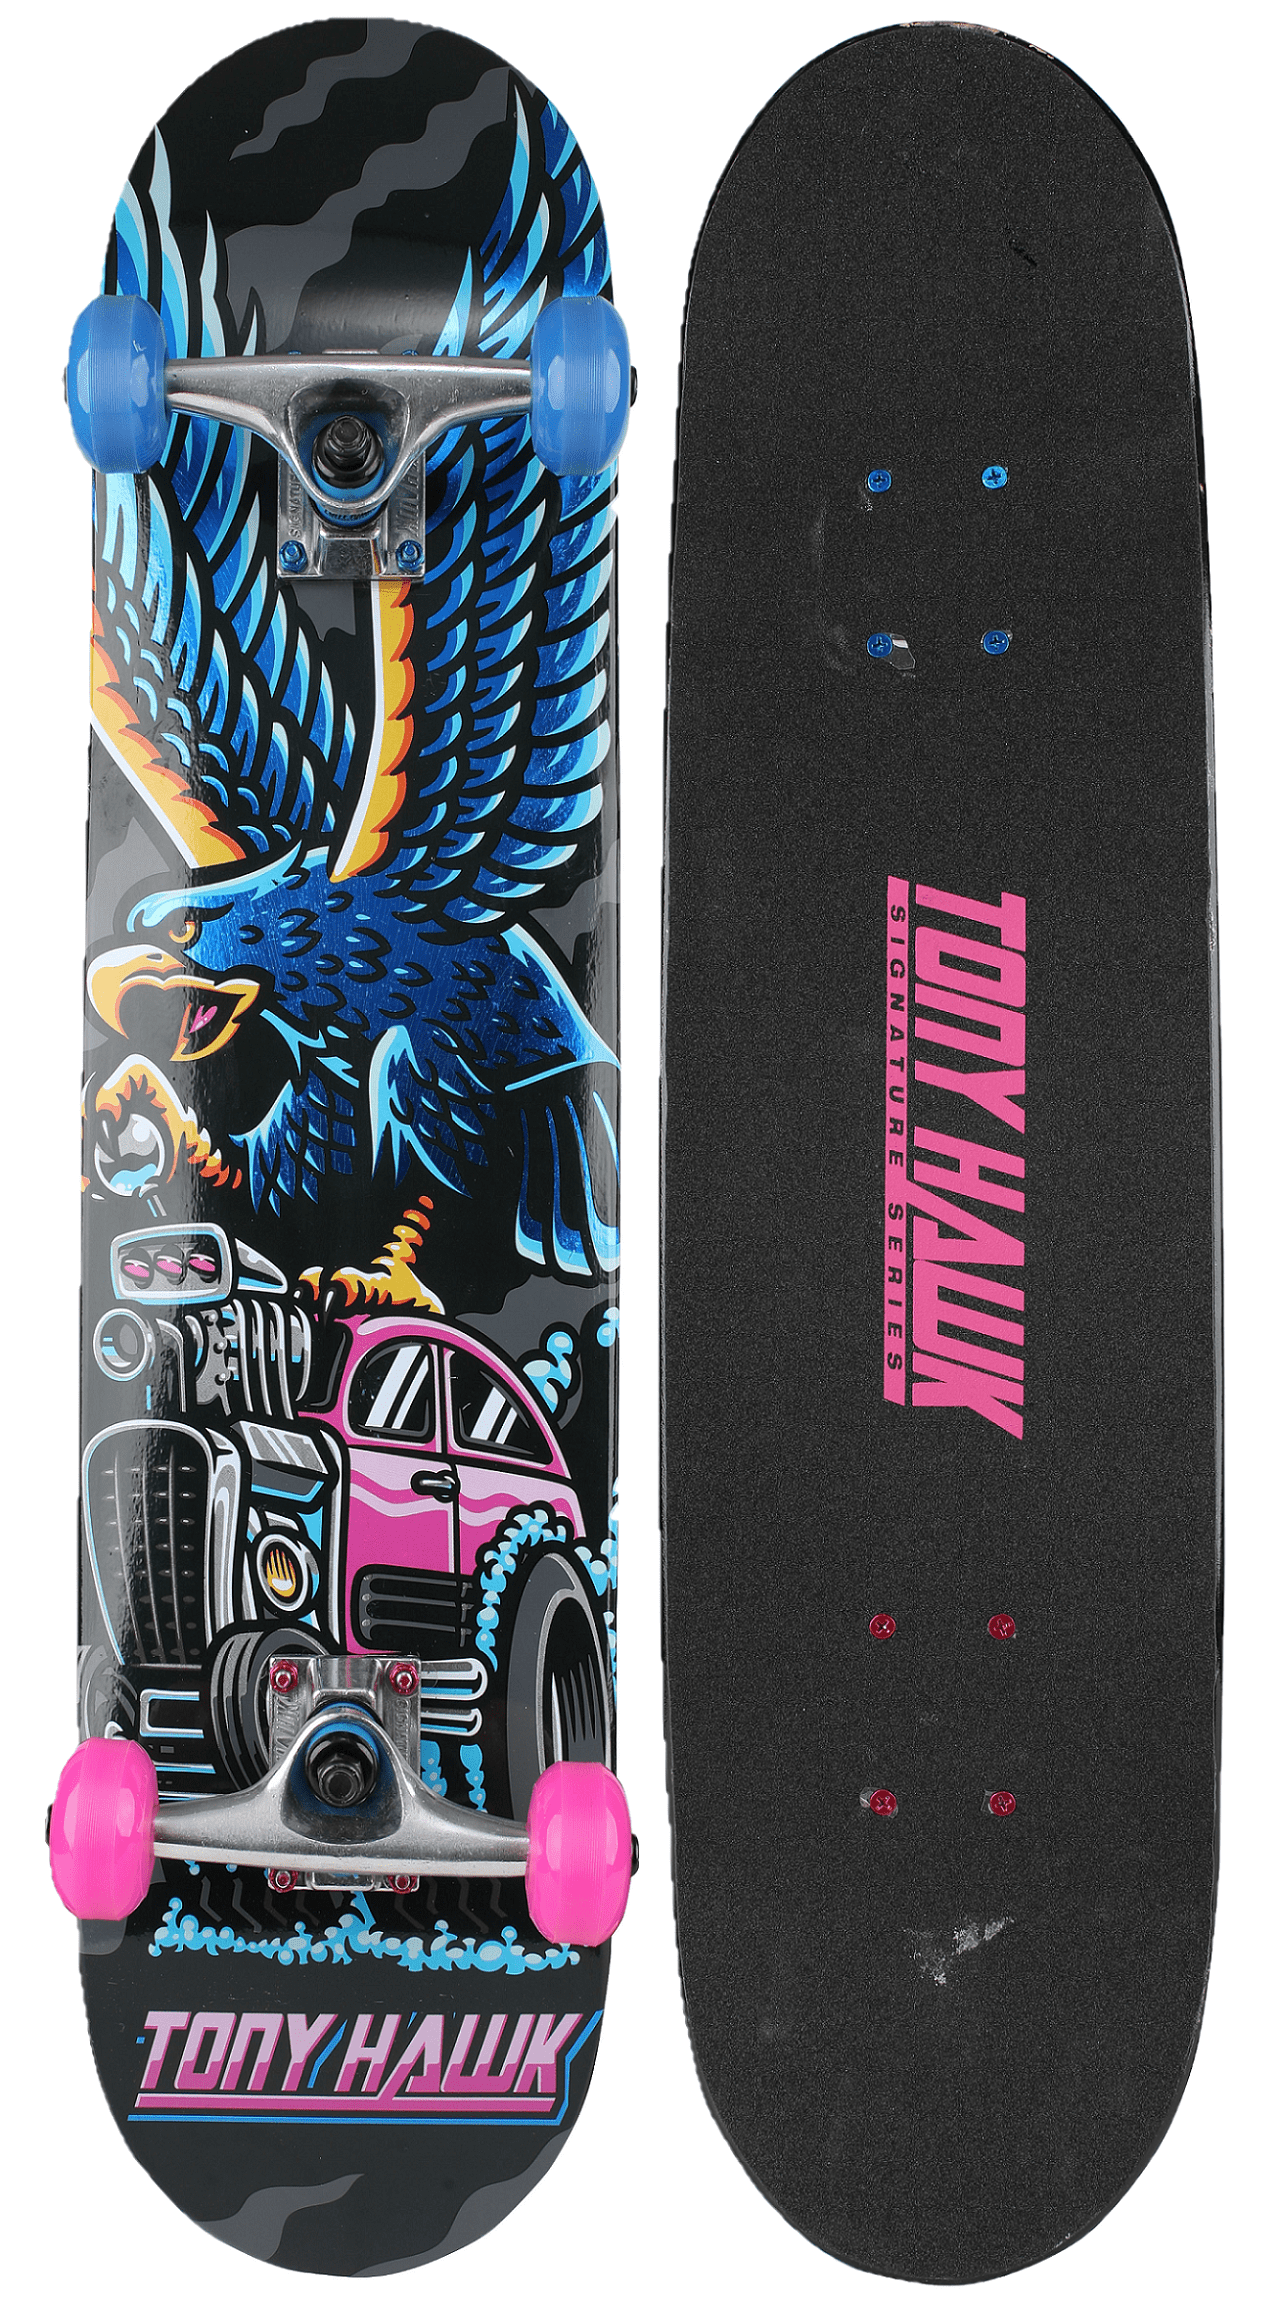 Door Aanvrager Menda City Tony Hawk 31" Popsicle Complete Skateboard with Pro Aluminum Trucks, Truck  Hawk, Kids Ages 5+ - Walmart.com